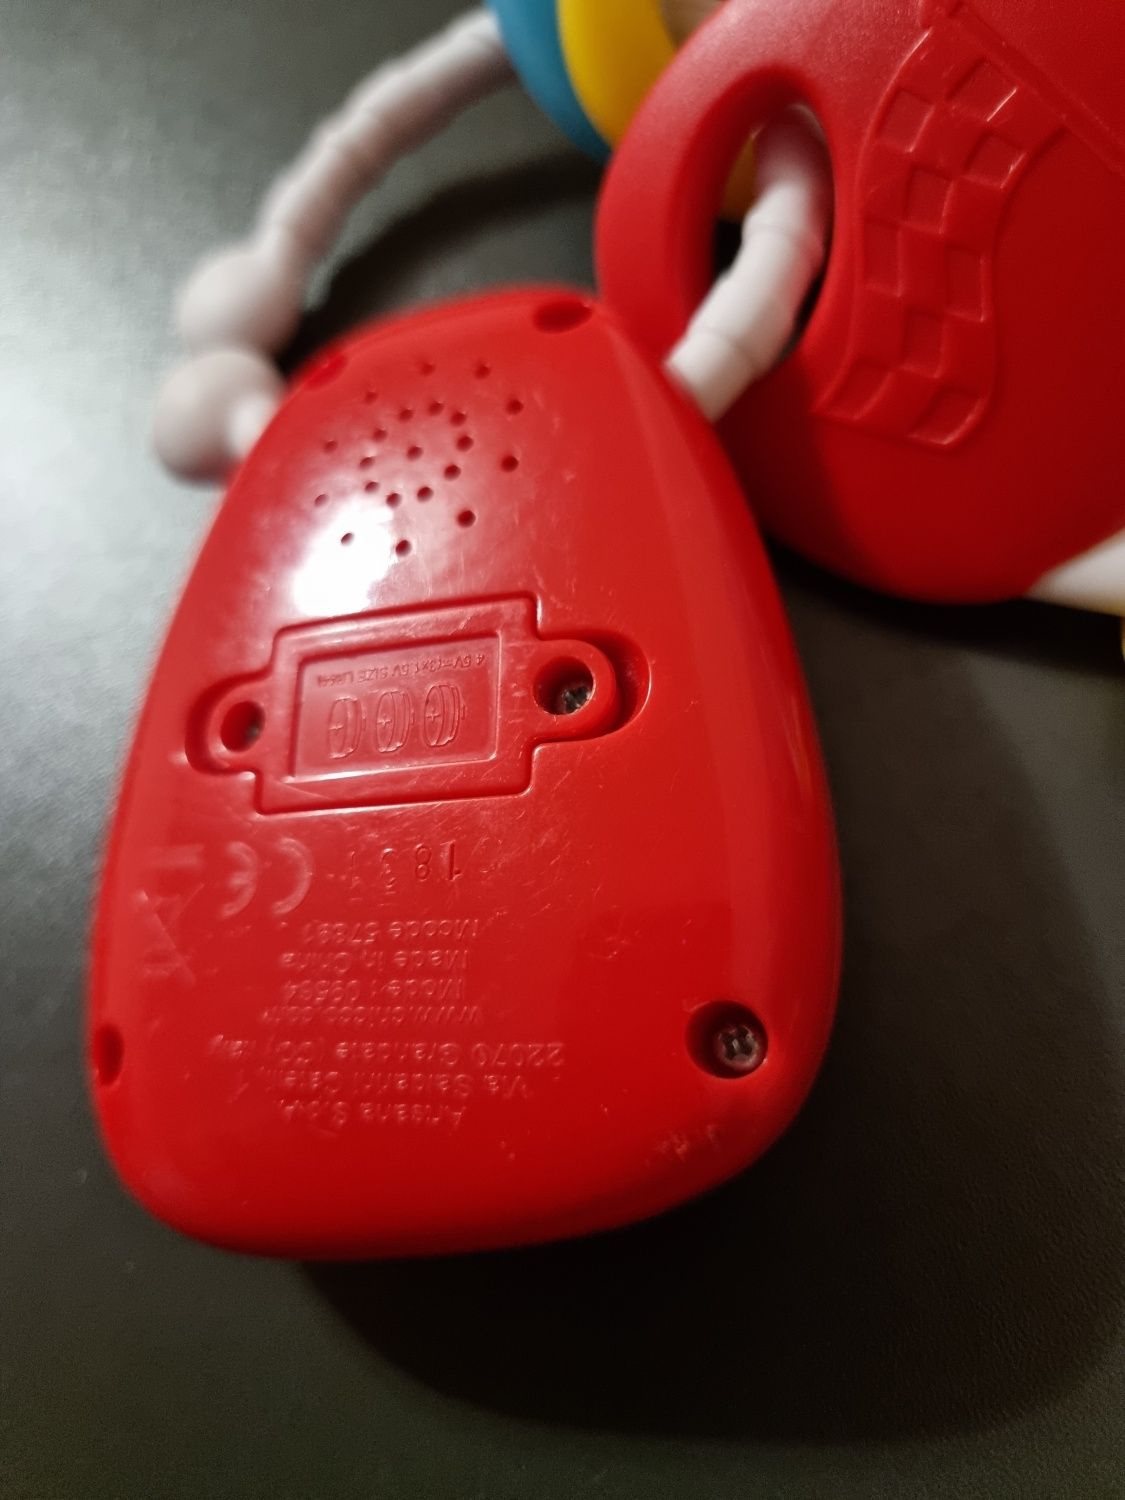 Музична іграшка Chicco Ключі Ferrari зі світловими ефектами

Особливо